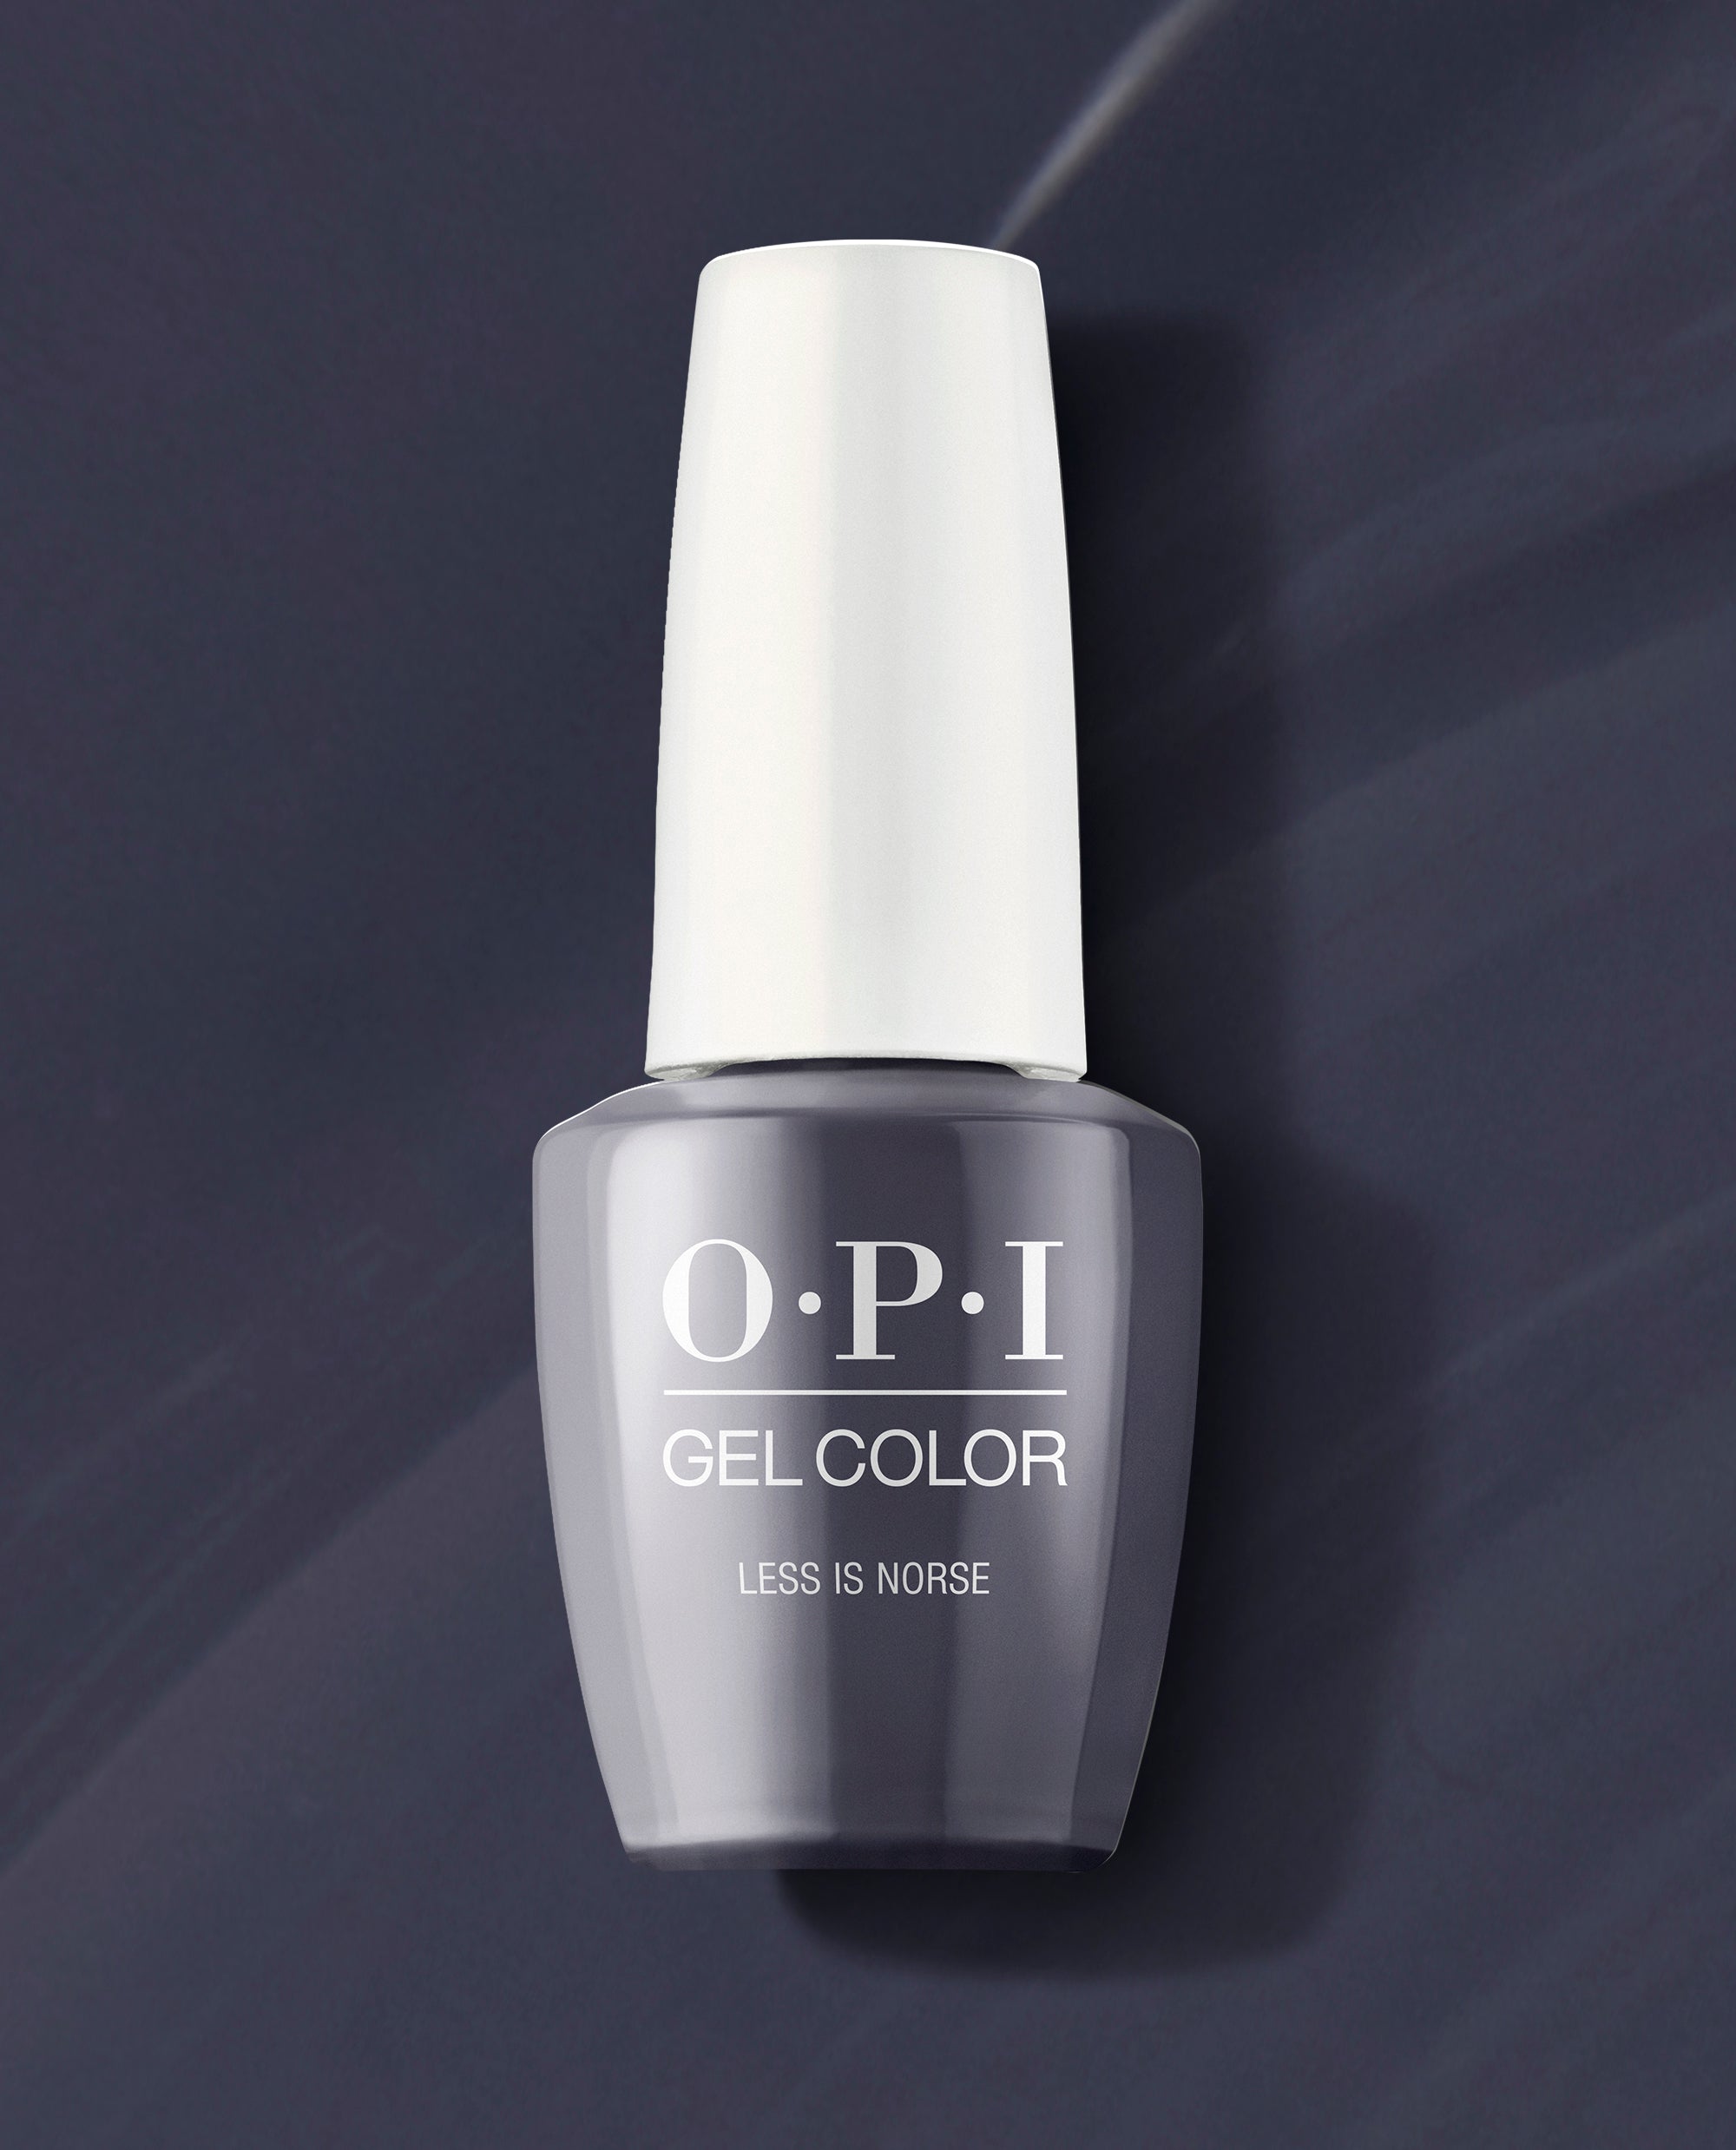 Let's Talk About Nail Polish | Nail polish, Opi nails, Opi nail polish